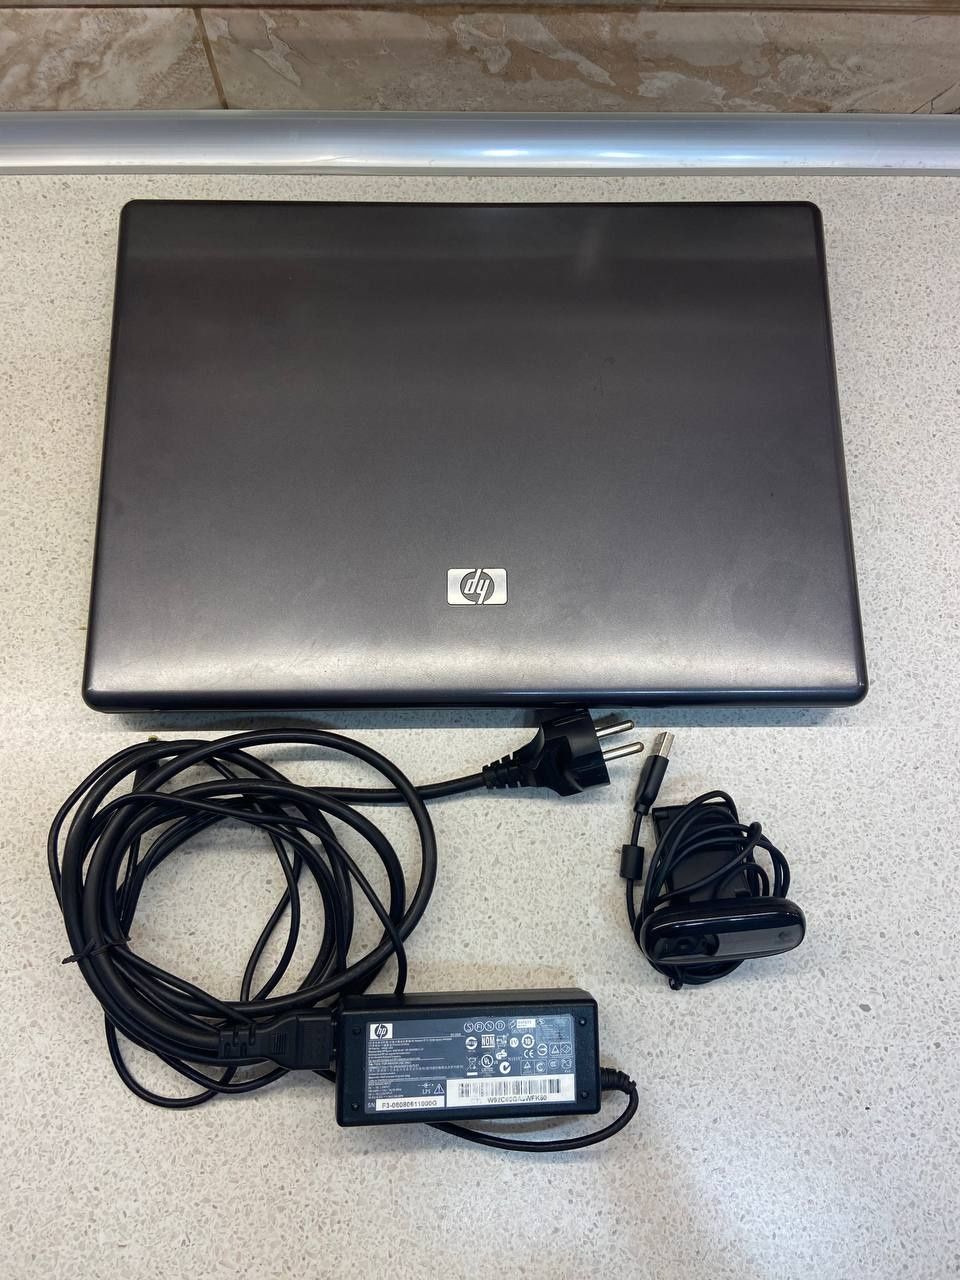 Ноутбук HP550 c веб-камерой Logitech Webcam C170 и сумкой для ноутбука